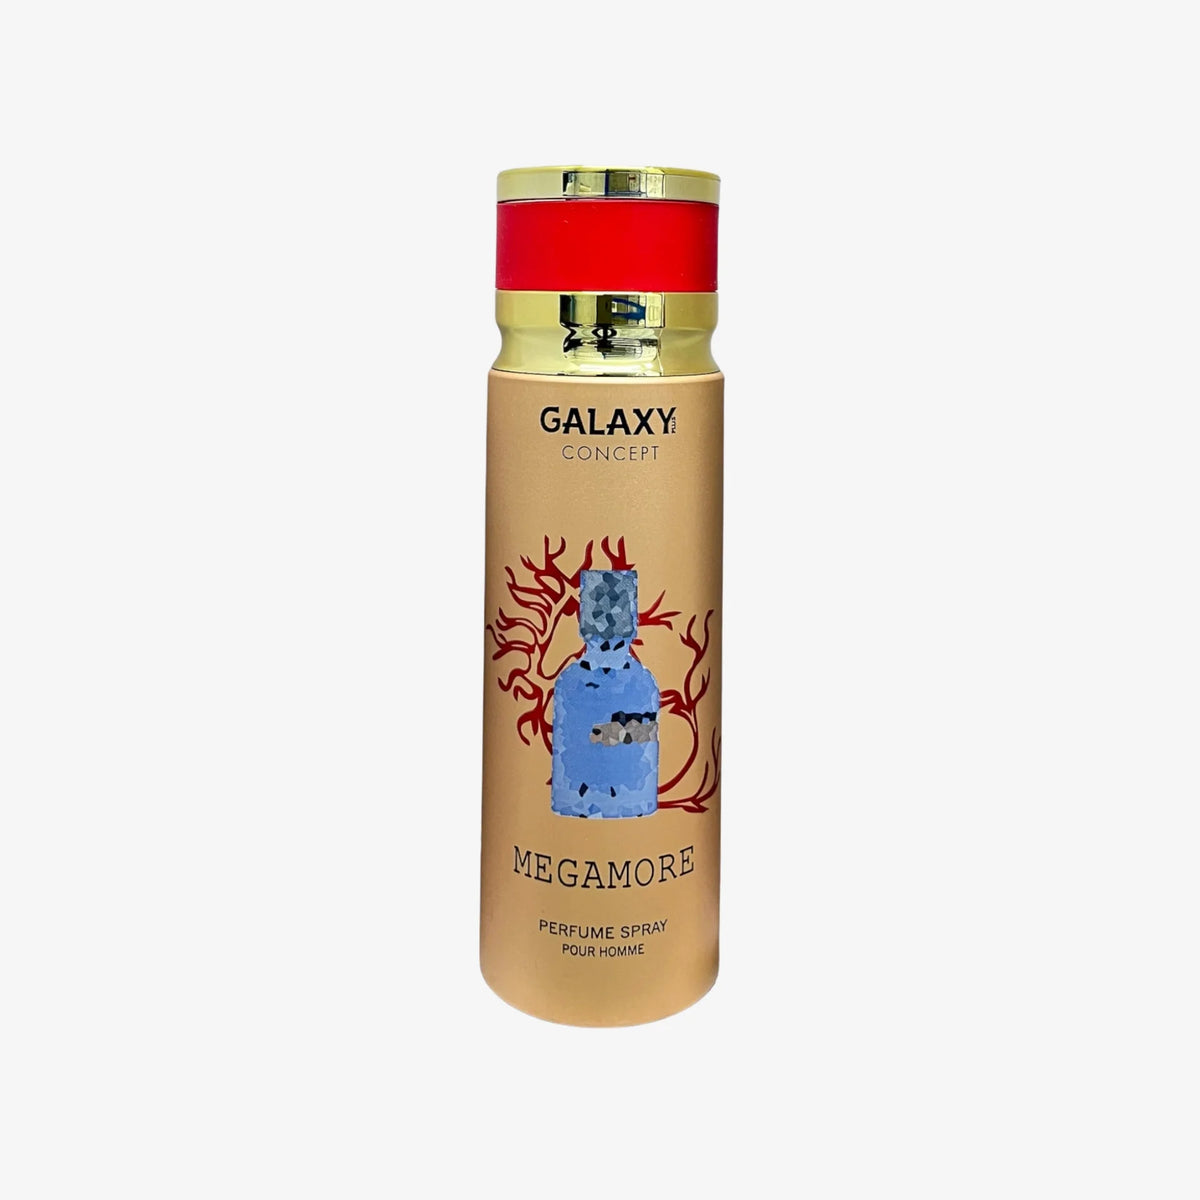 MEGAMORE Body Spray Galaxy Concept